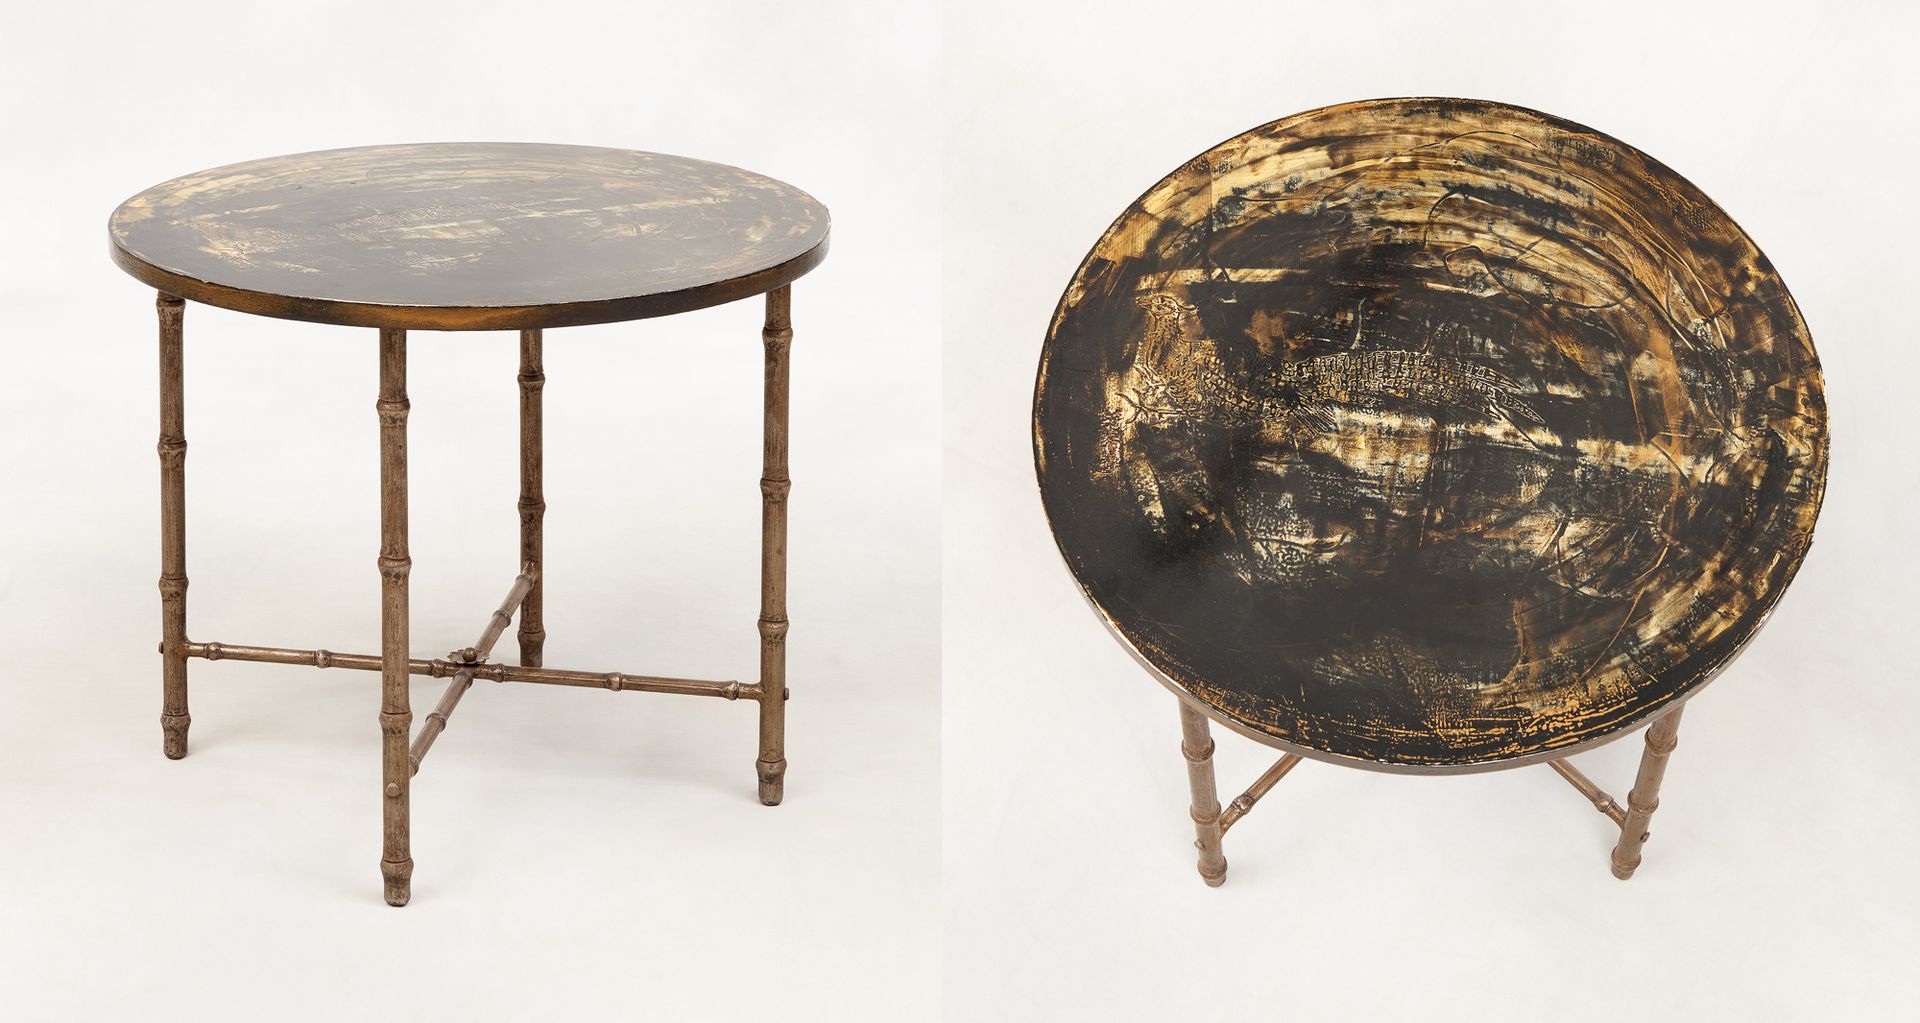 Design 20e. 家具：圆形边桌，金属竹子底座，顶部装饰有野鸡图案。

归属于查尔斯之家的作品。

尺寸：高：49直径60厘米。